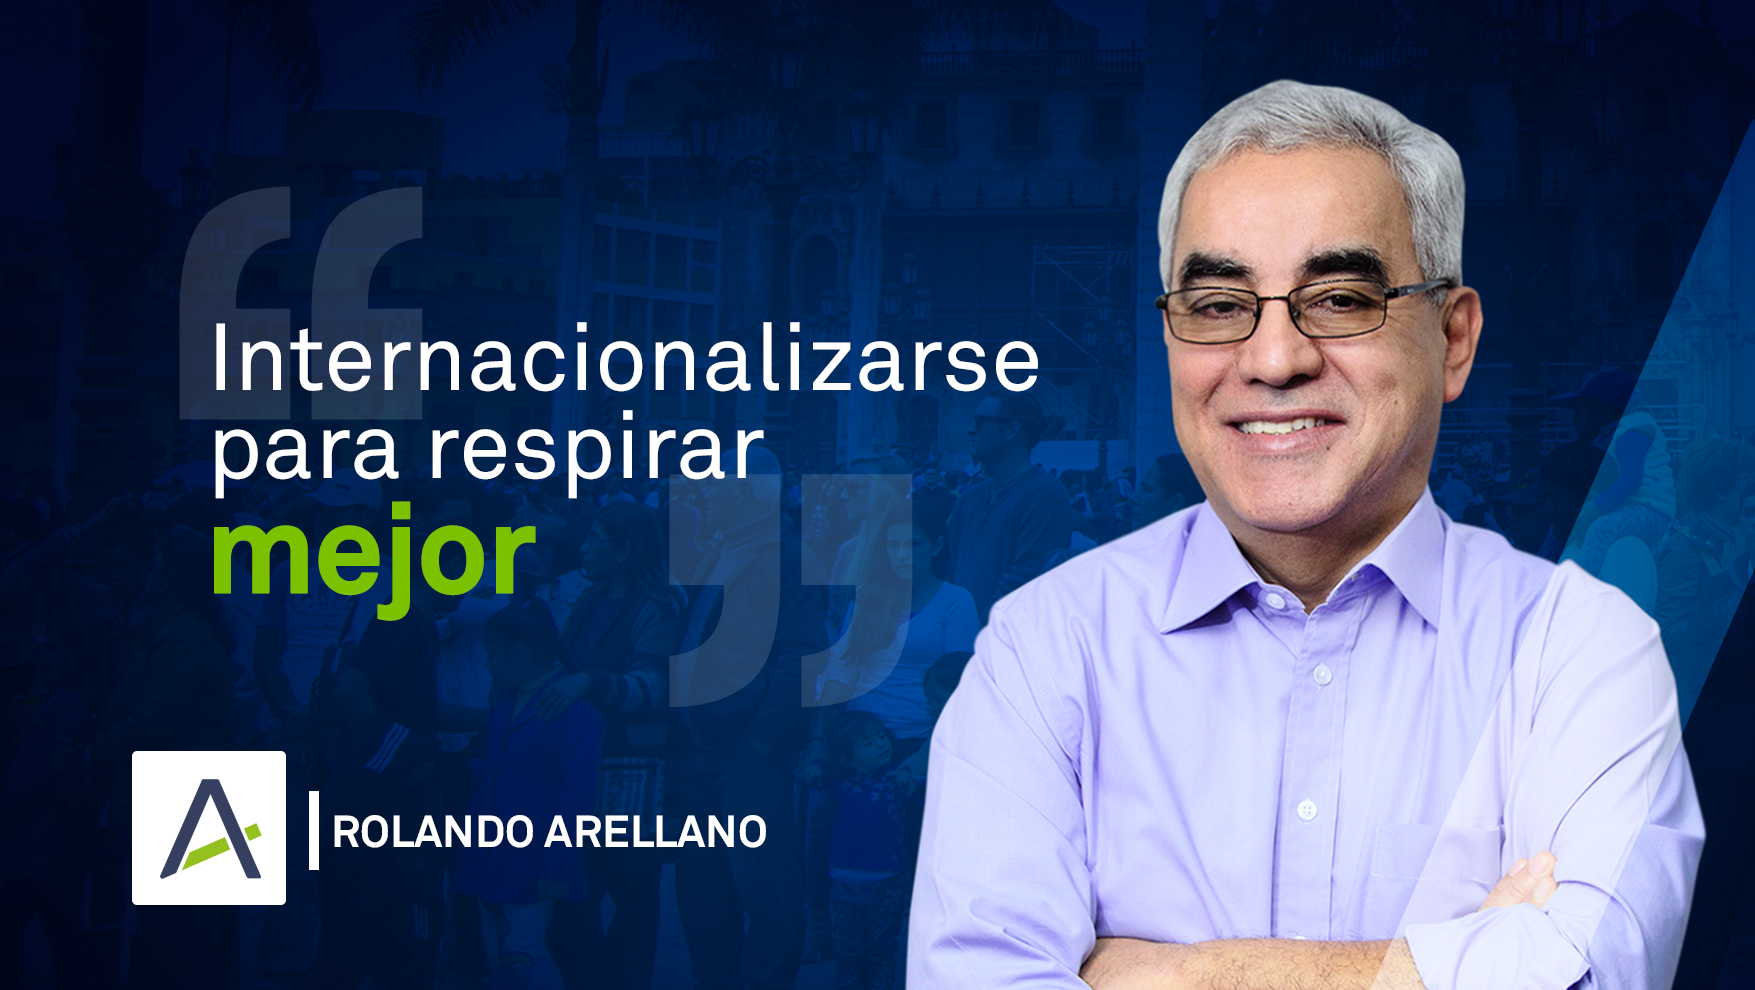 Rolando Arellano 17-06-19